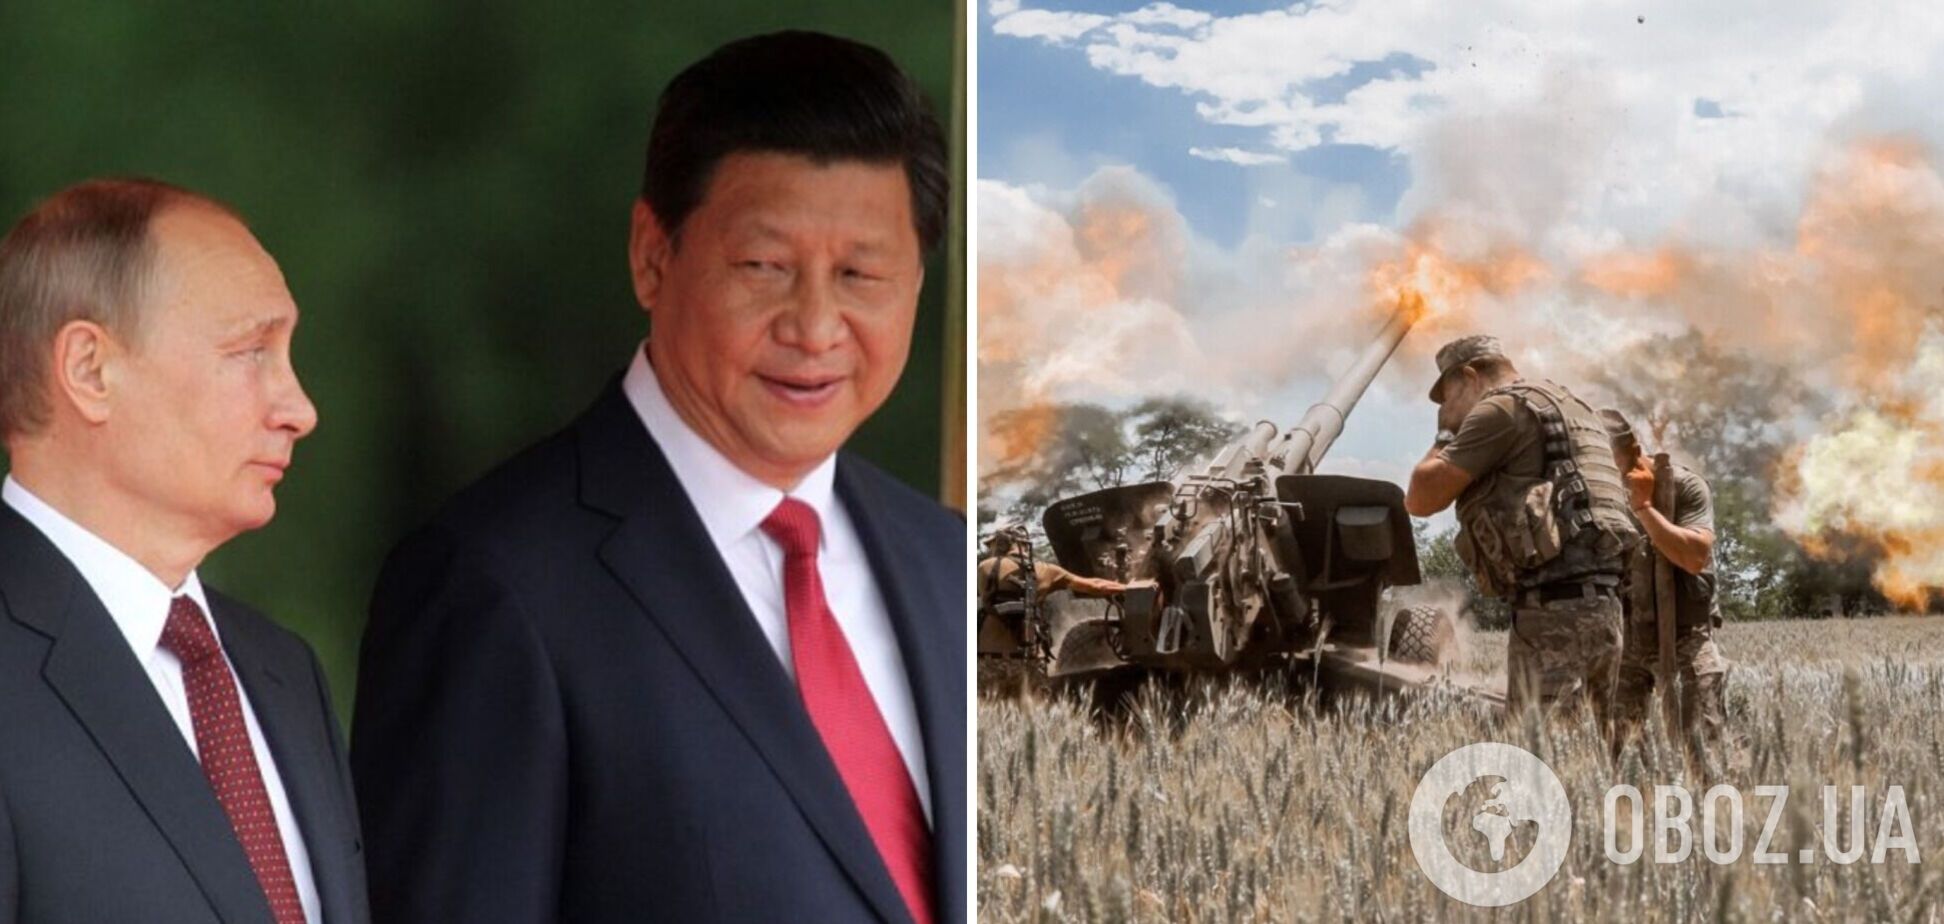 Си Цзиньпин высказался о войне в Украине и заявил, что санкции против РФ могут ударить бумерангом